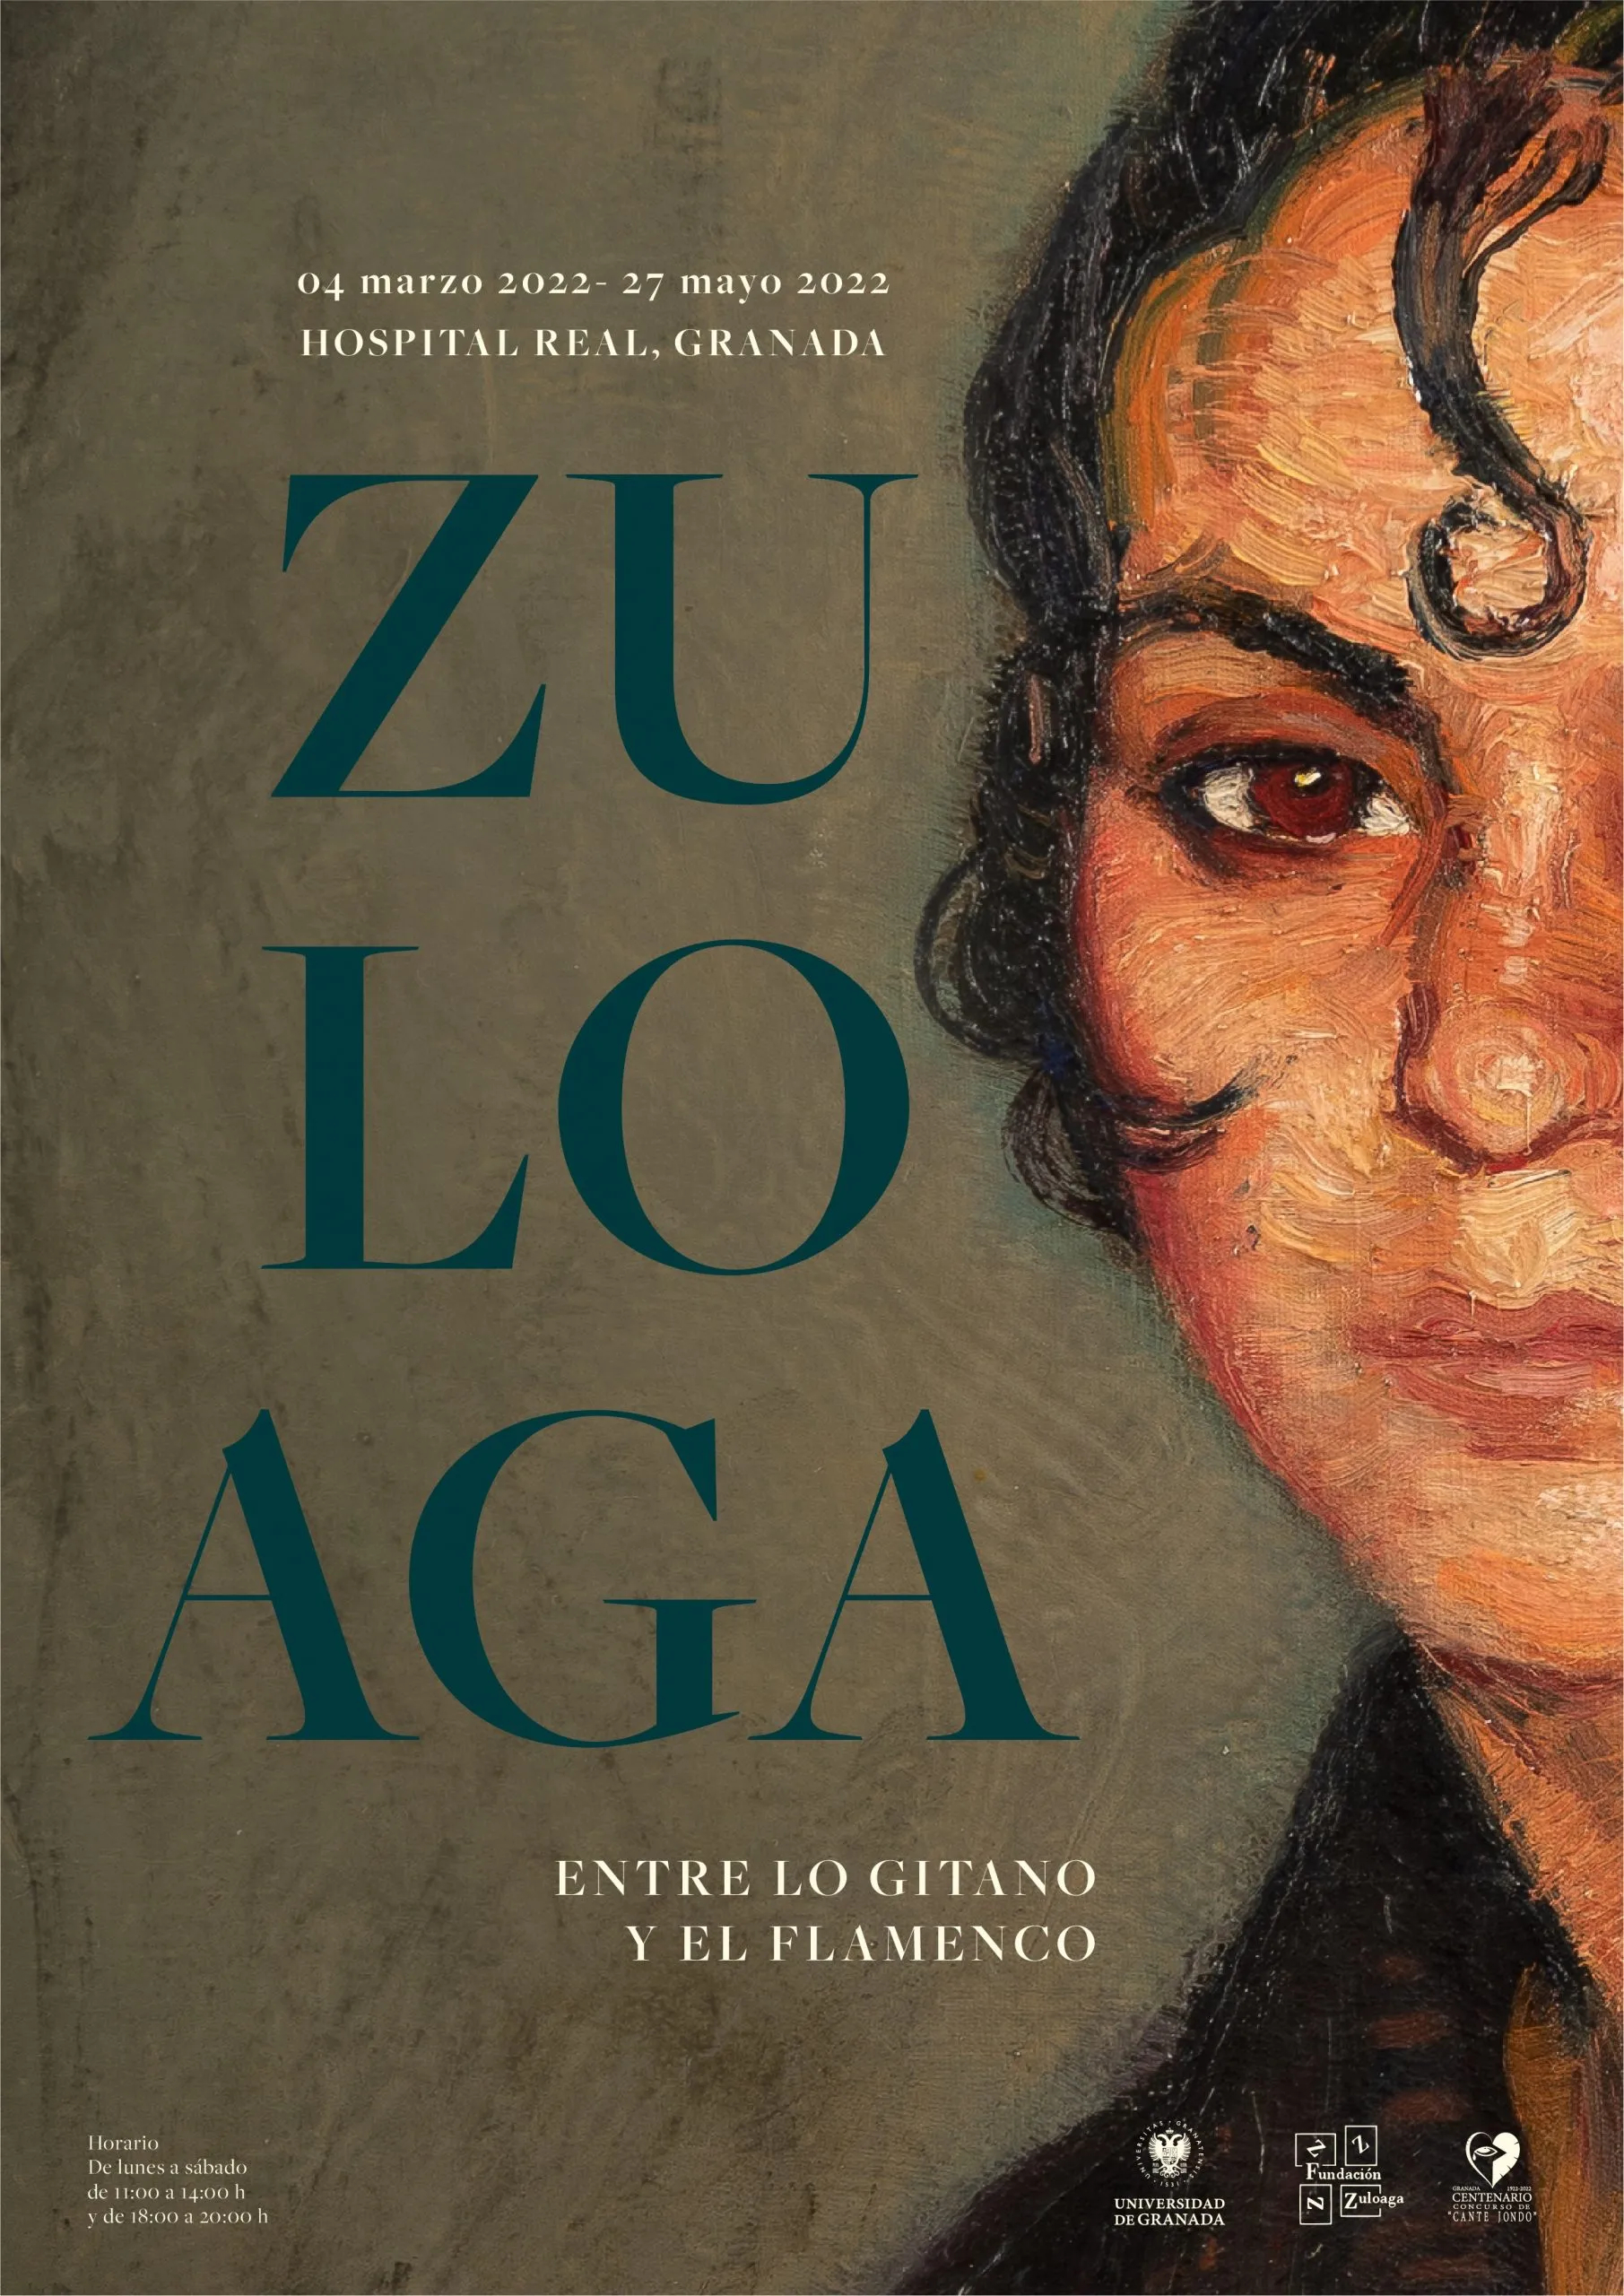 cartel de la exposición, vista parcial de rostro de una mujer en una obra de Zuloaga